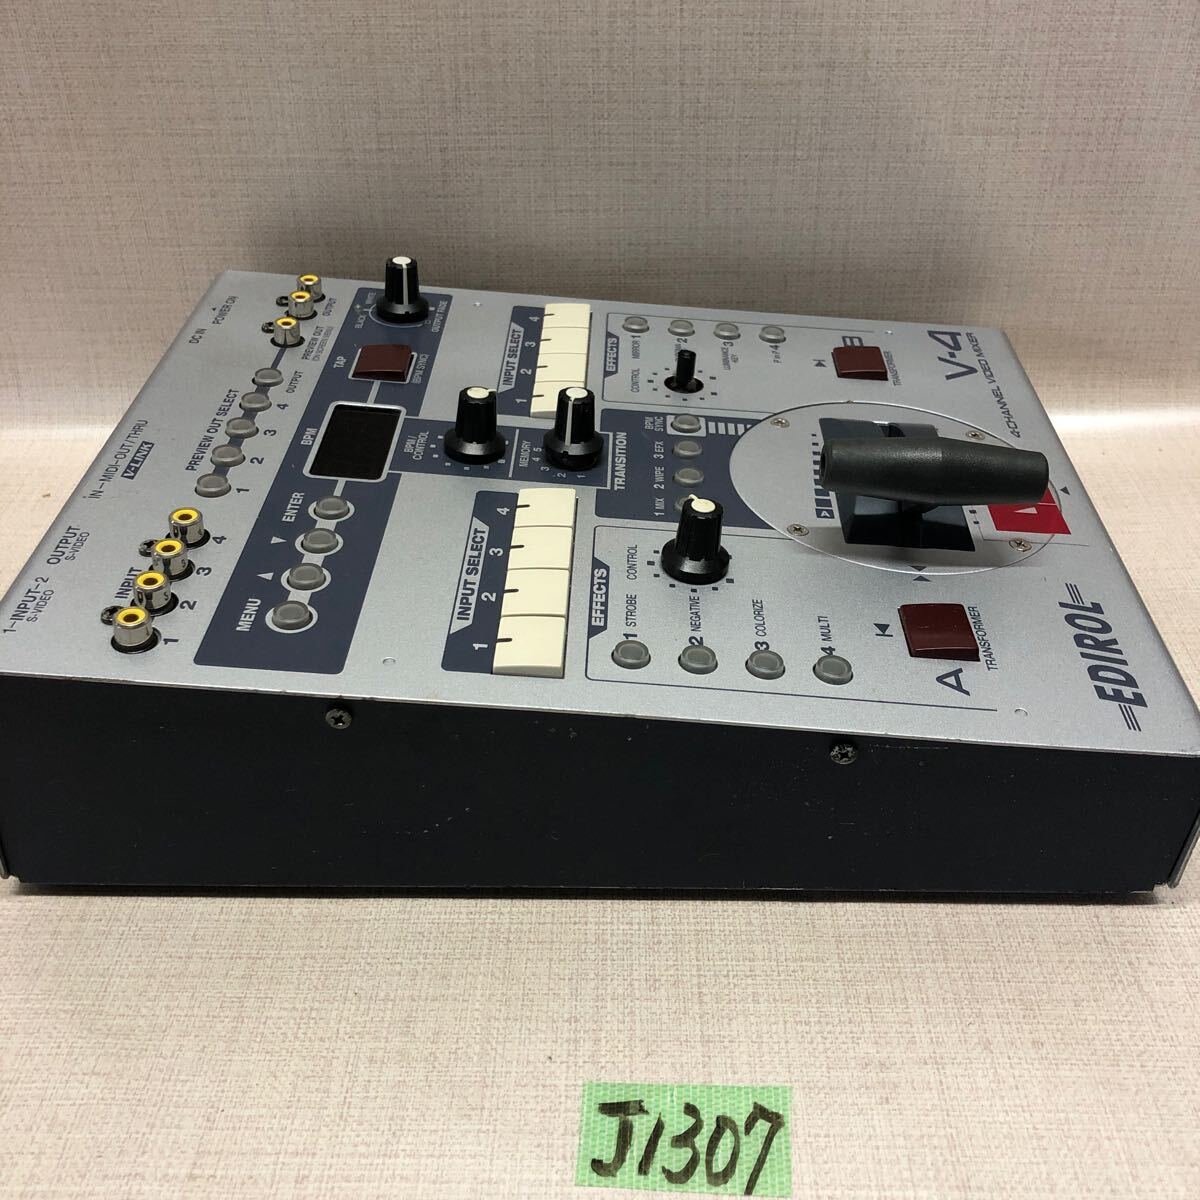 (J1307) Roland EDIROL video mixer V-4 power supply adaptor lack of 